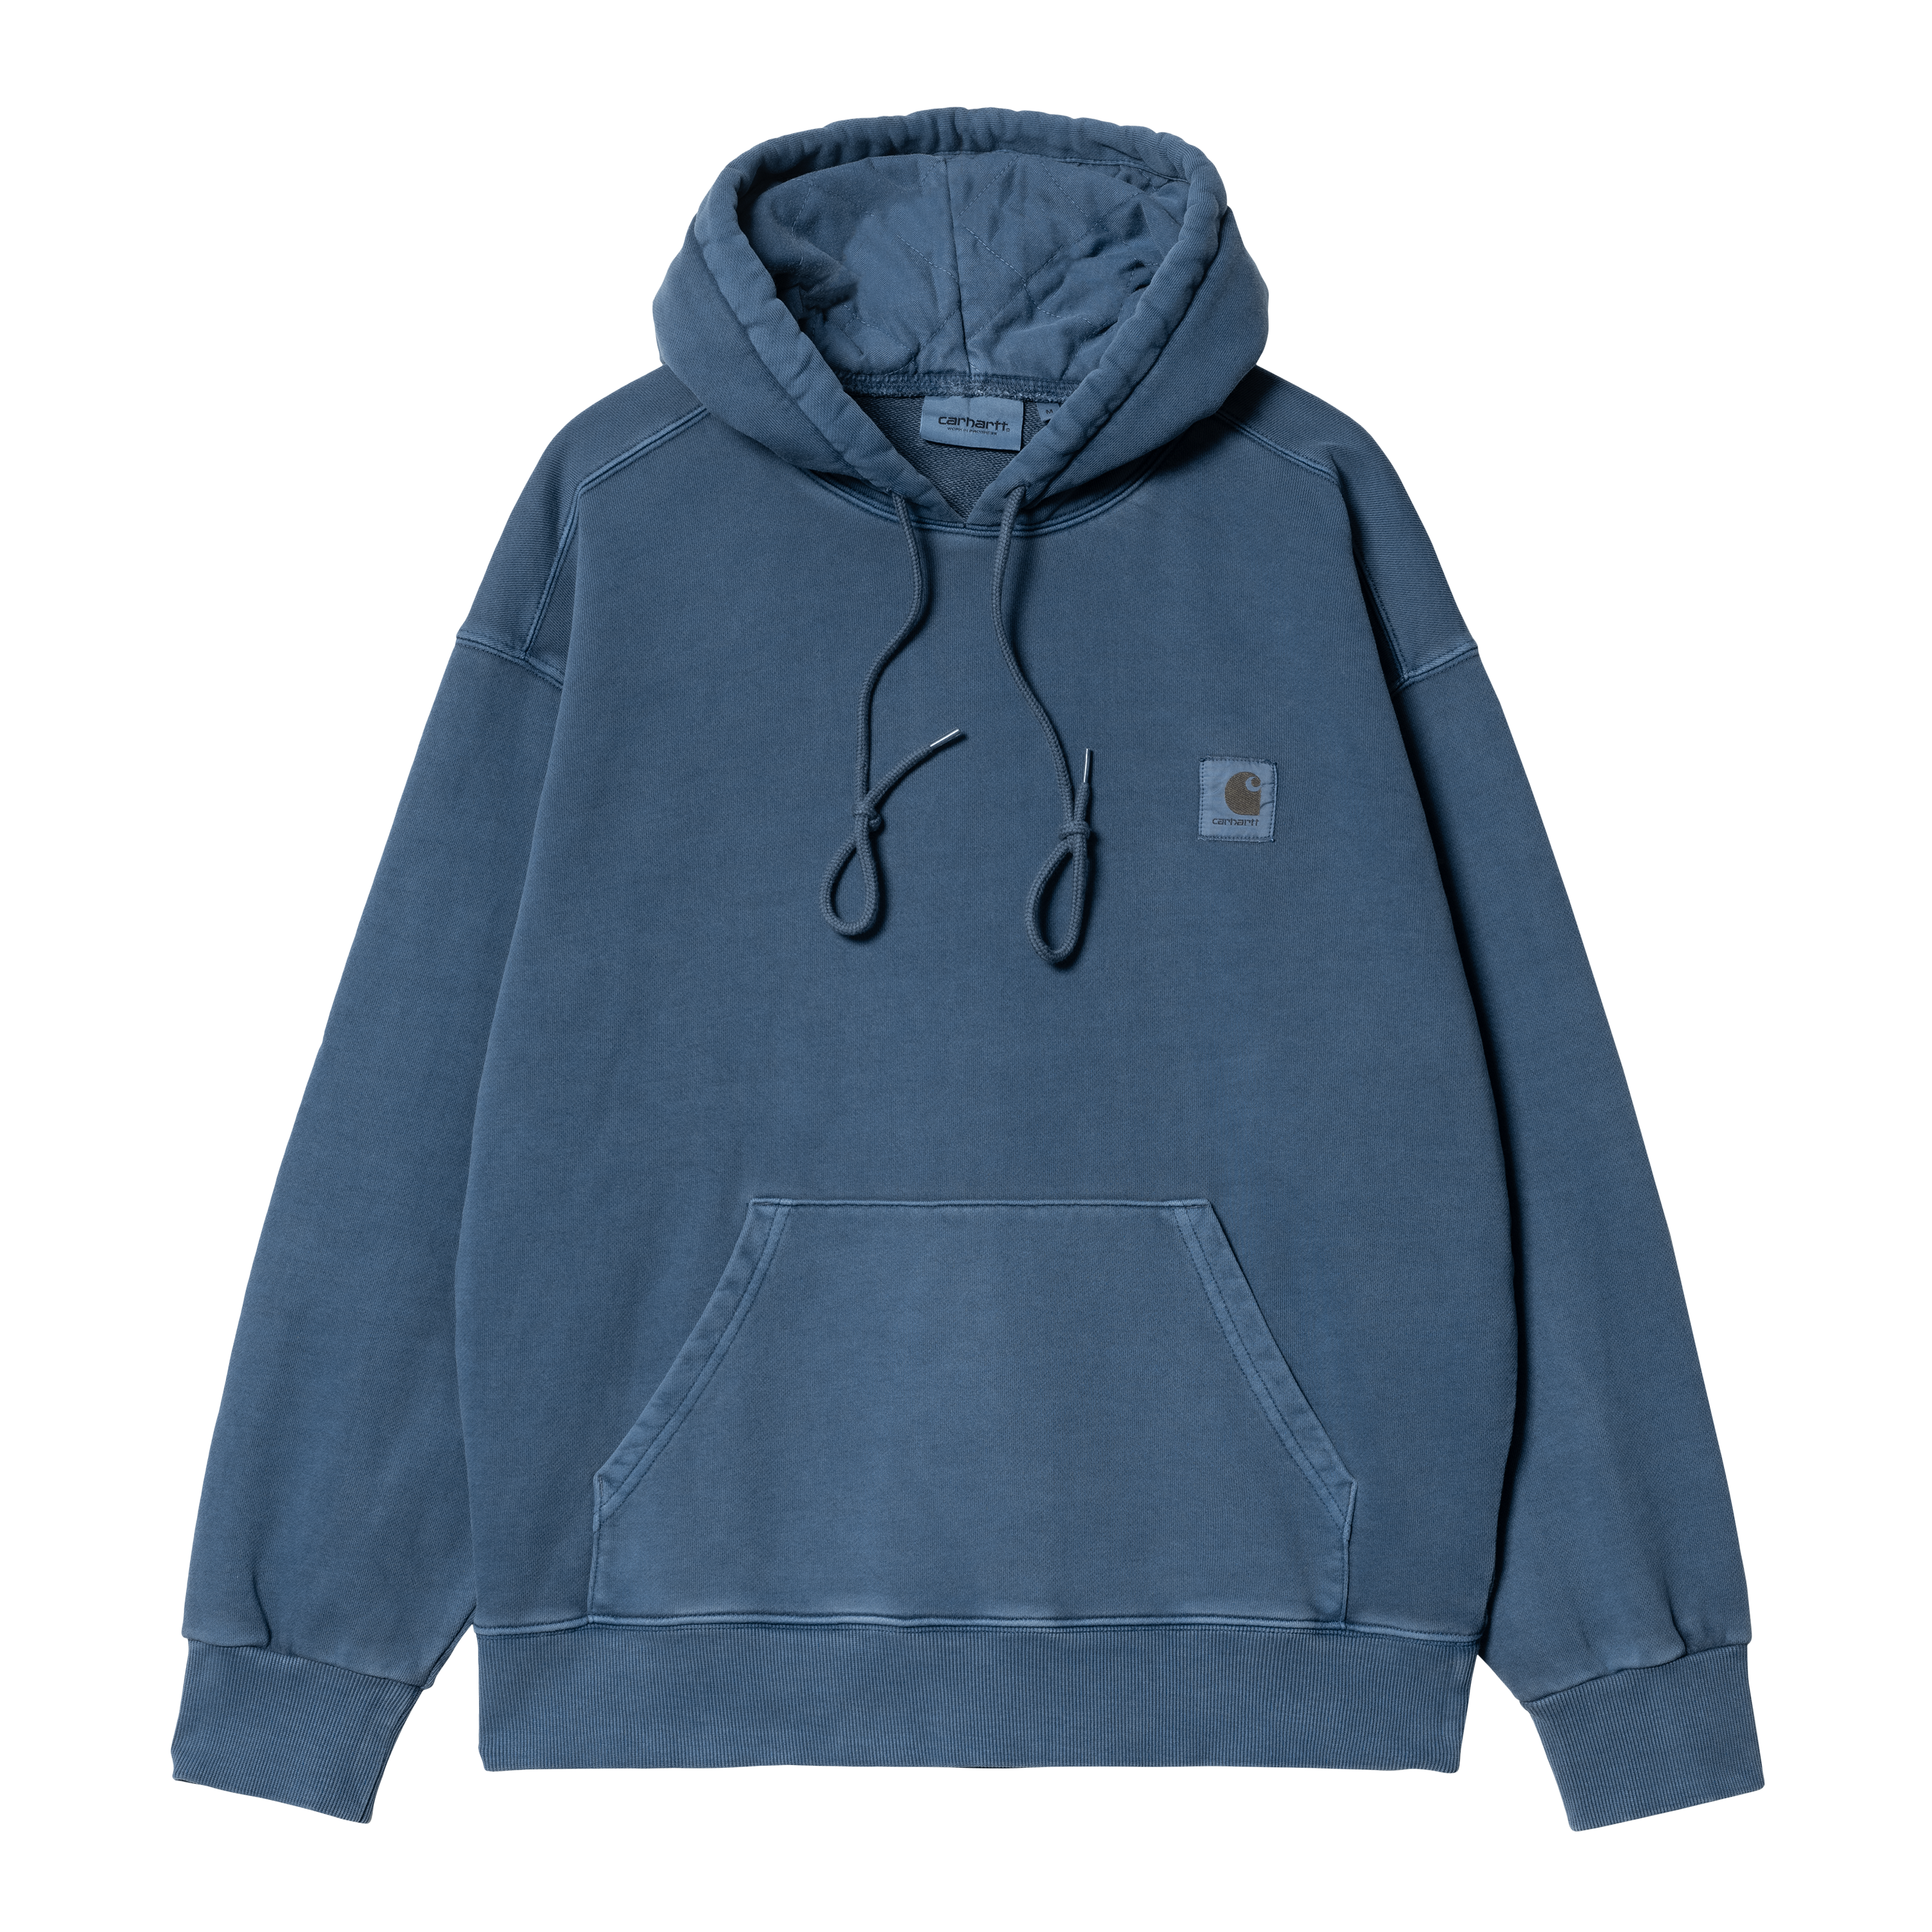 Carhartt WIP Hooded Nelson Sweatshirt in Blu